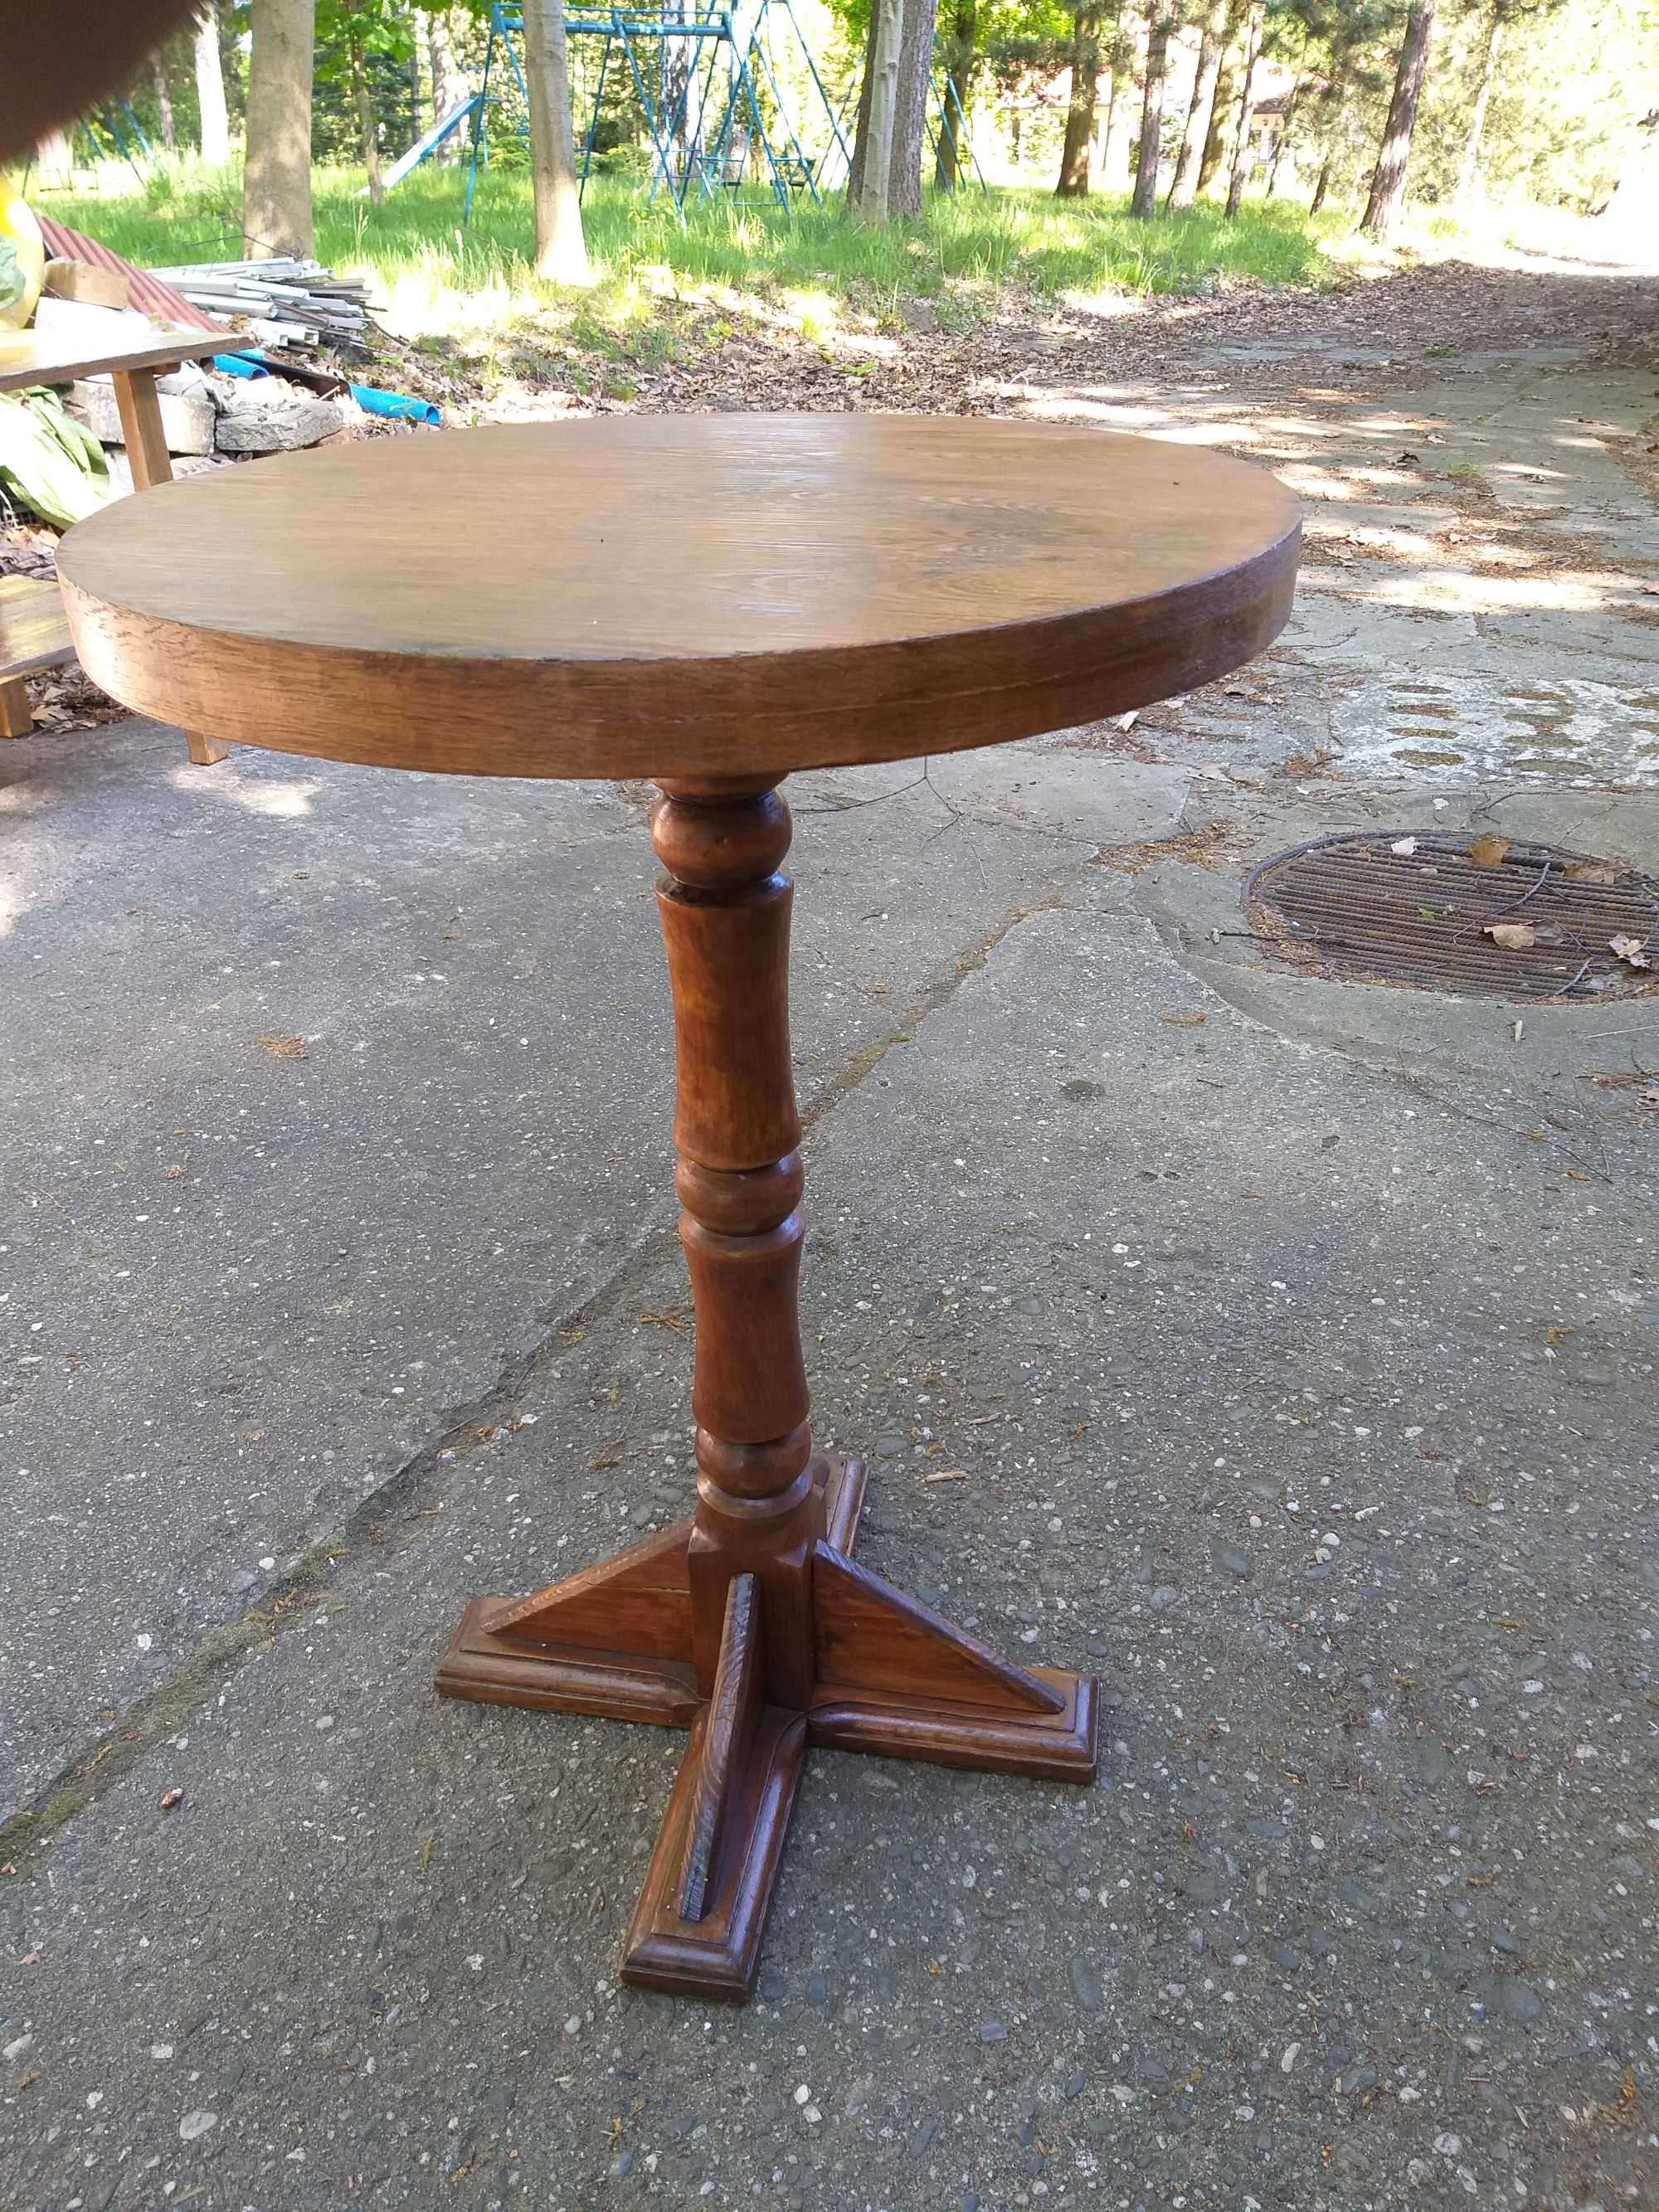 Stary stolik okrągły Fi 55 cm. x 79 wysokości